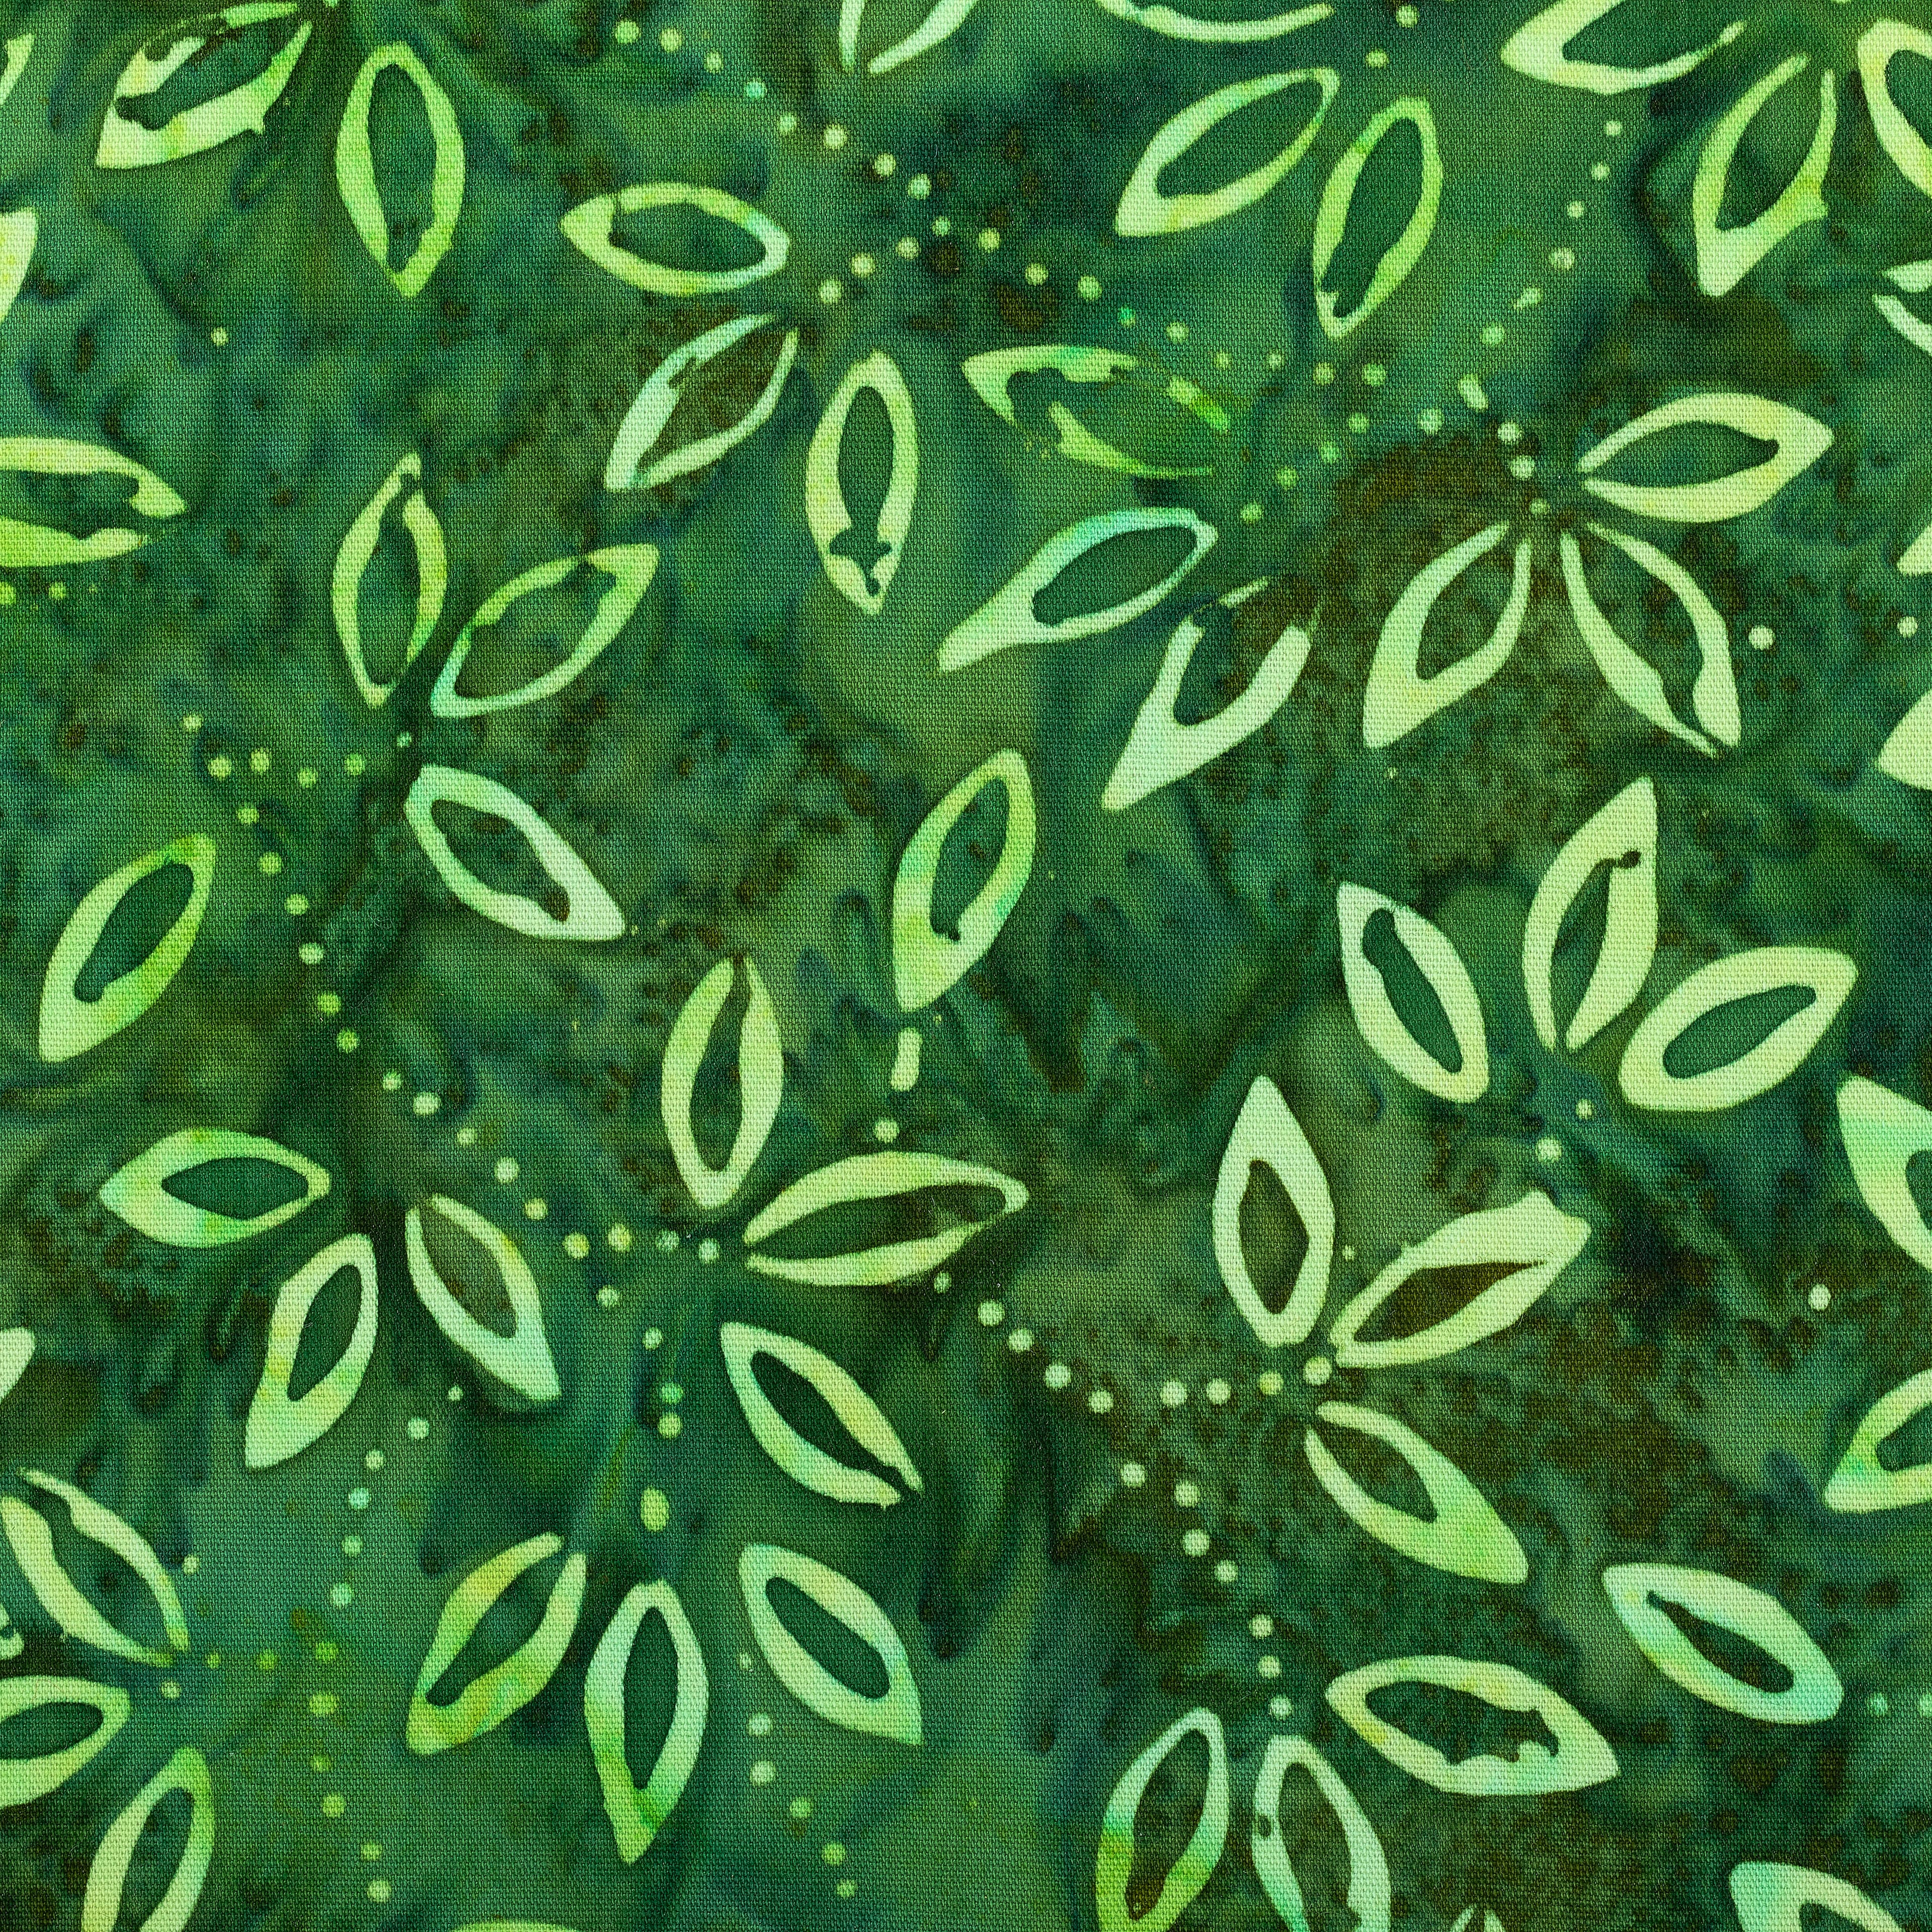 Premium Indonesian Batik Green Leaves Fabric